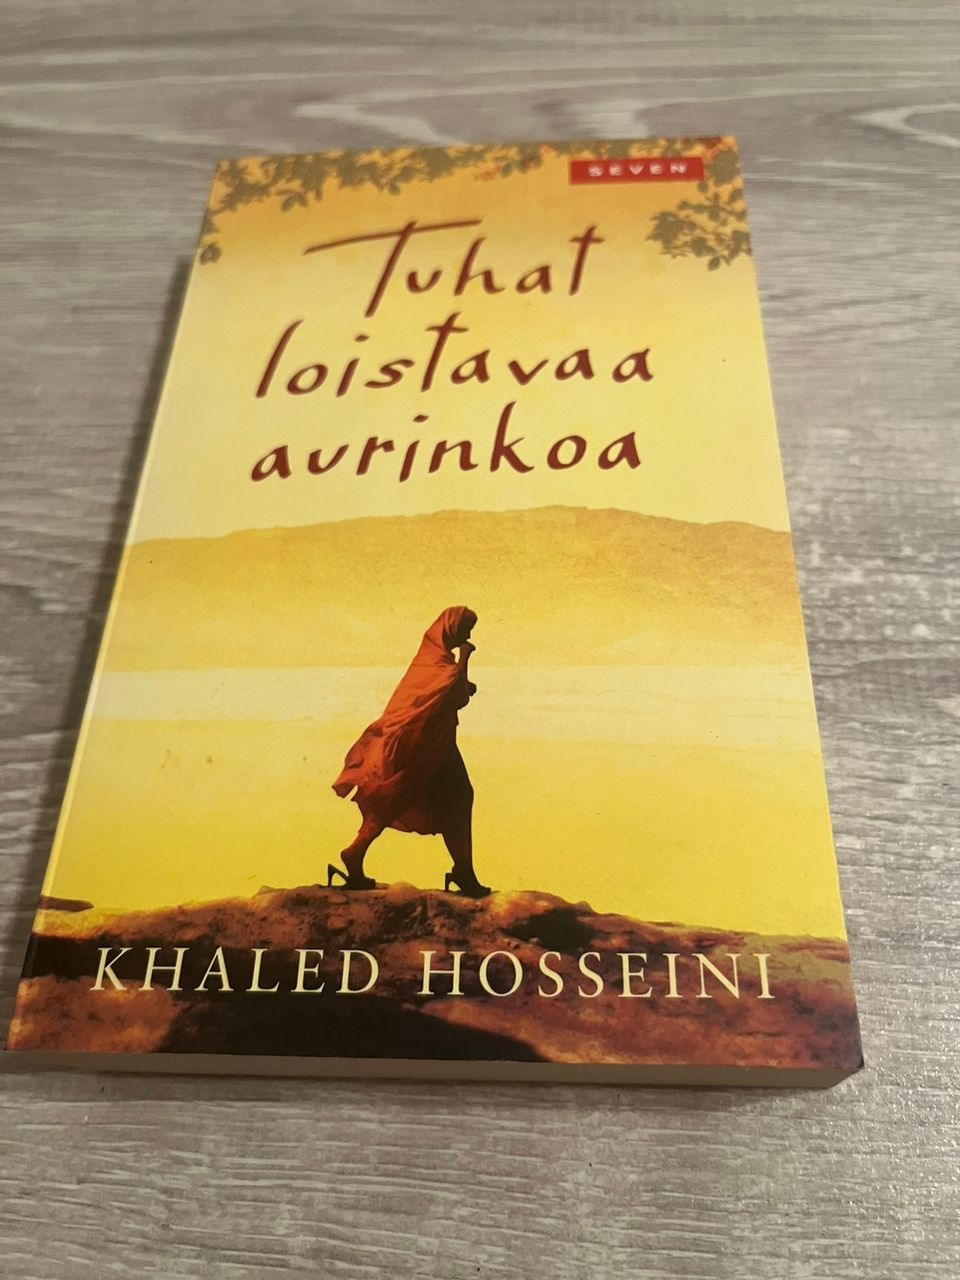 Khaled Hosseini - Tuhat loistavaa aurinkoa